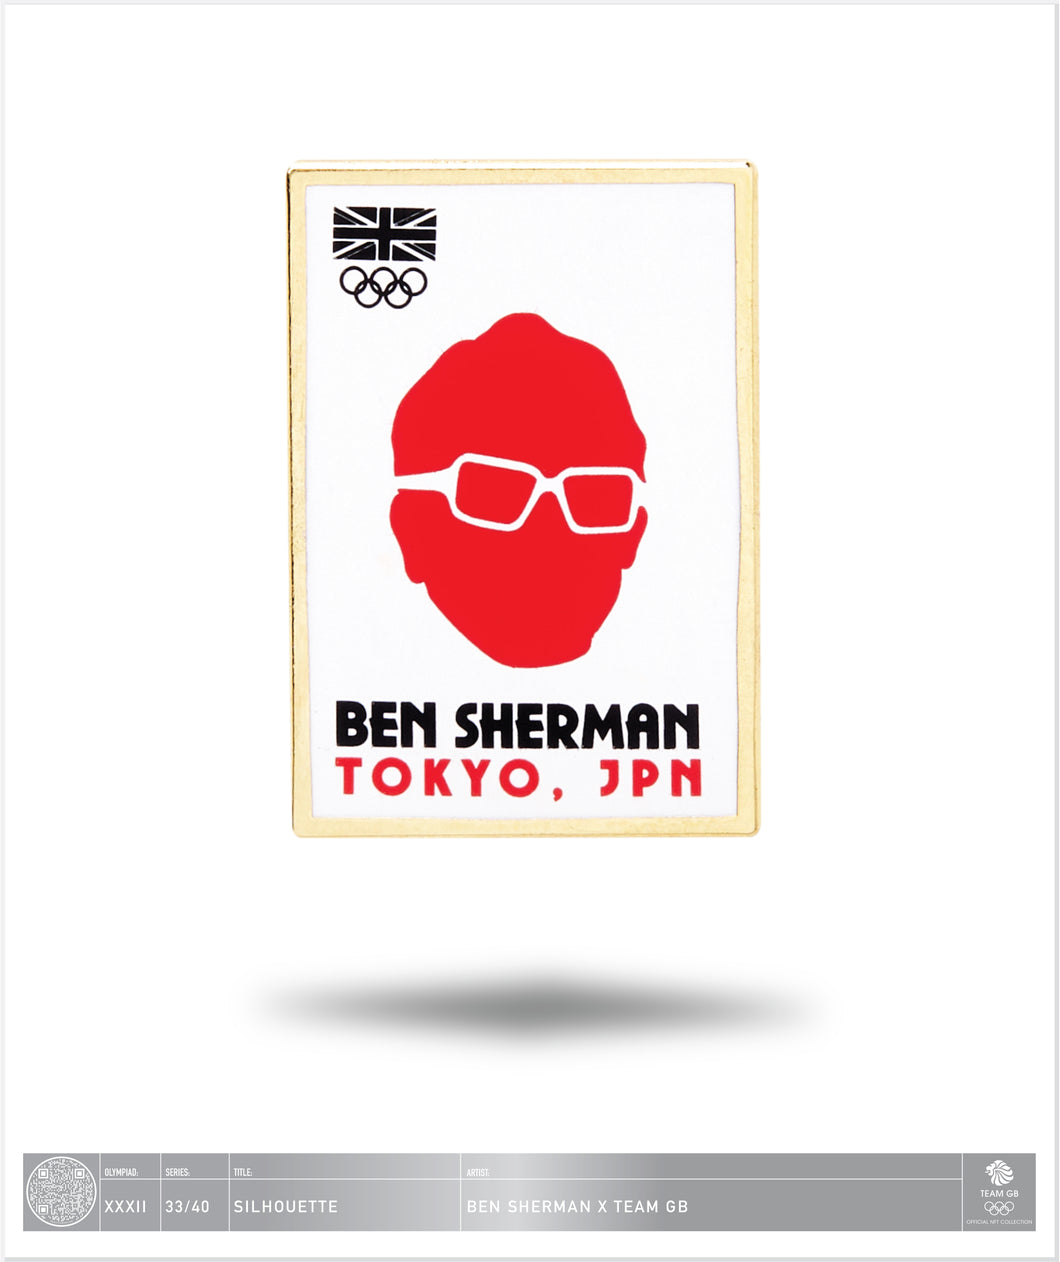 Ben Sherman Tokyo - Silhouette - 33 / 40